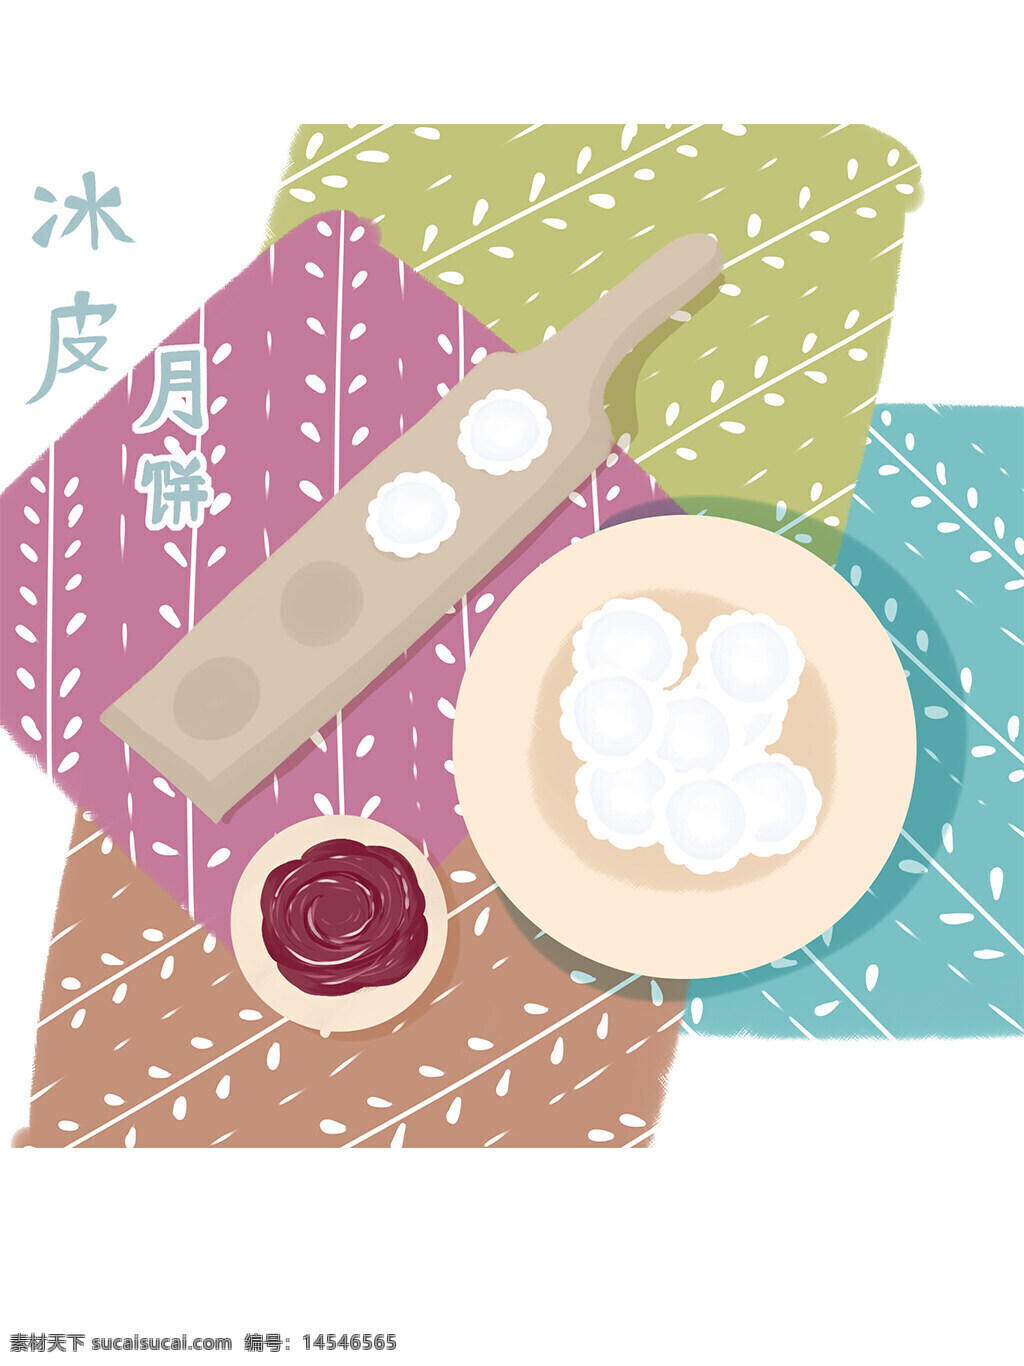 中秋节 月饼 冰球月饼 节日 传统节日